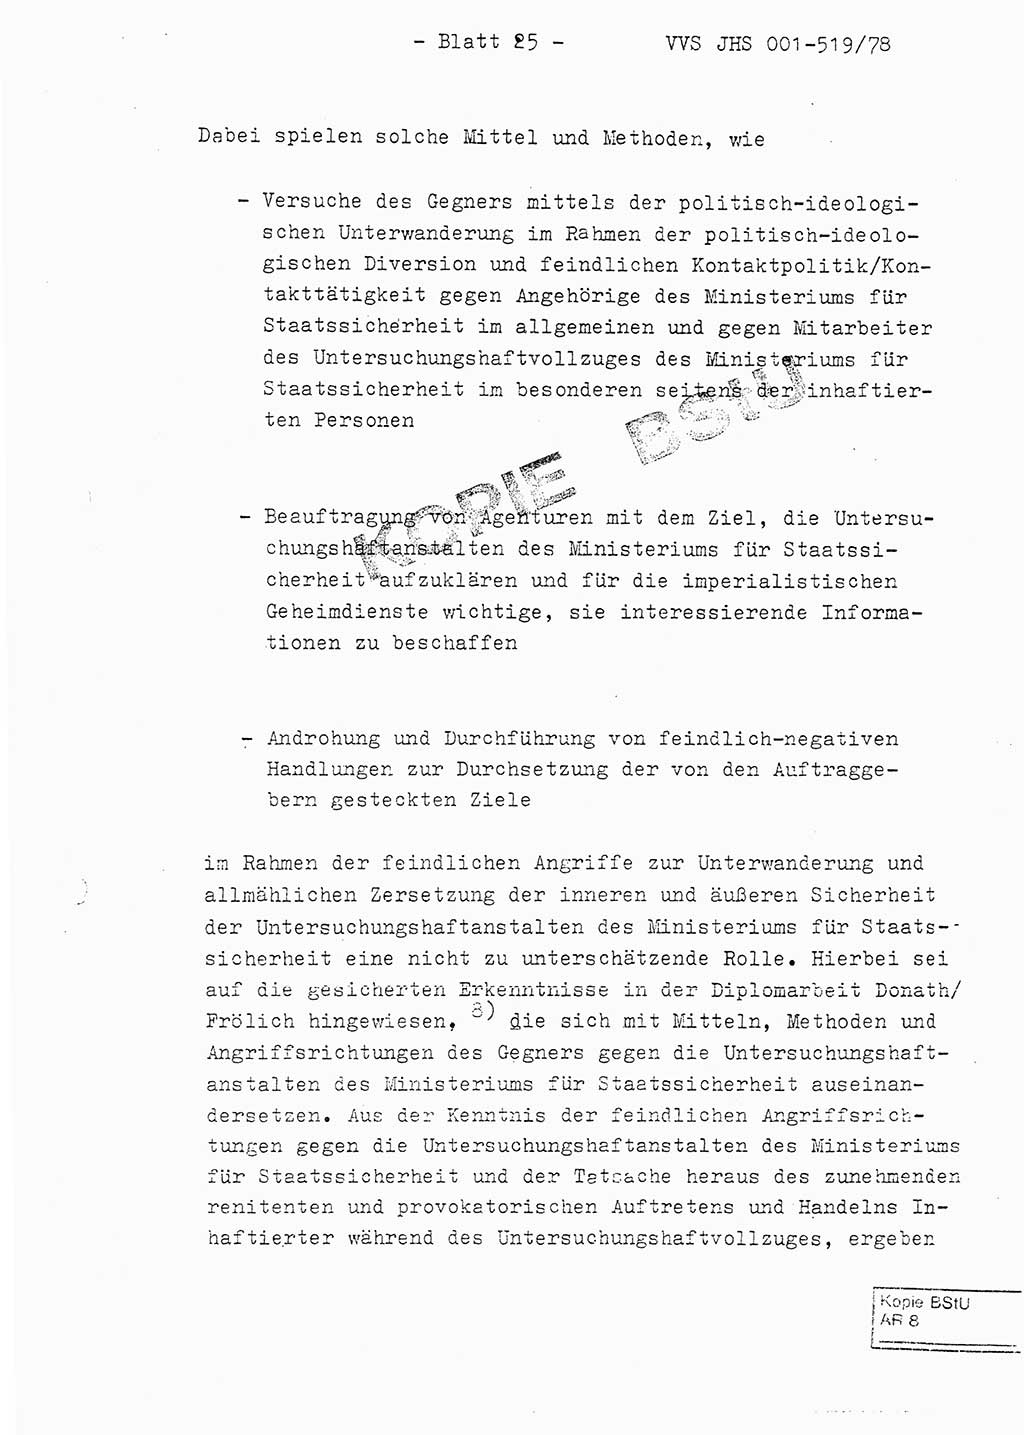 Fachschulabschlußarbeit Hauptmann Alfons Lützelberger (Abt. ⅩⅣ), Ministerium für Staatssicherheit (MfS) [Deutsche Demokratische Republik (DDR)], Juristische Hochschule (JHS), Vertrauliche Verschlußsache (VVS) 001-519/78, Potsdam 1978, Blatt 25 (FS-Abschl.-Arb. MfS DDR JHS VVS 001-519/78 1978, Bl. 25)